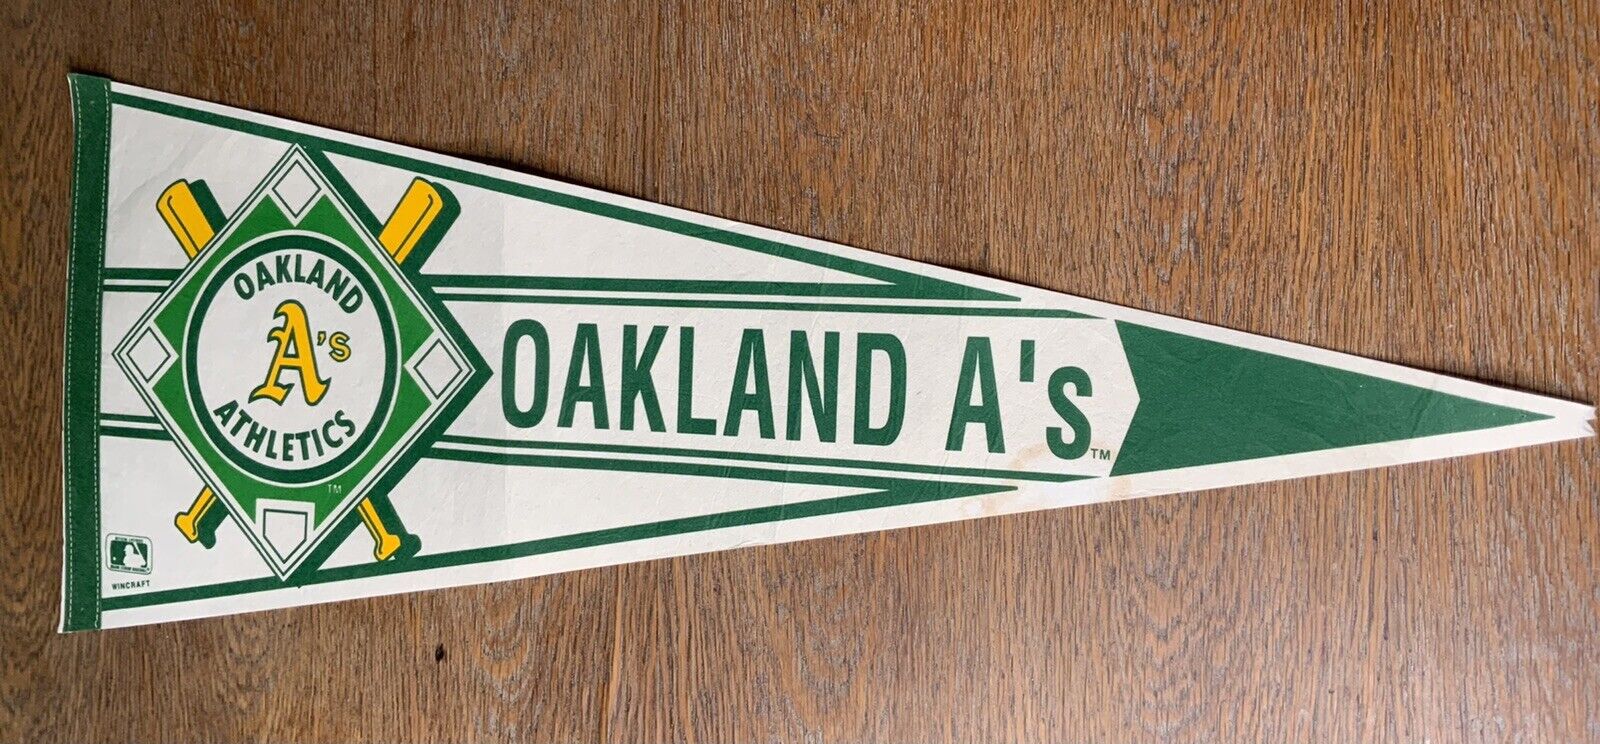 Vintage Pennant Oakland A’s Athletics Baseball MLB Souvenir